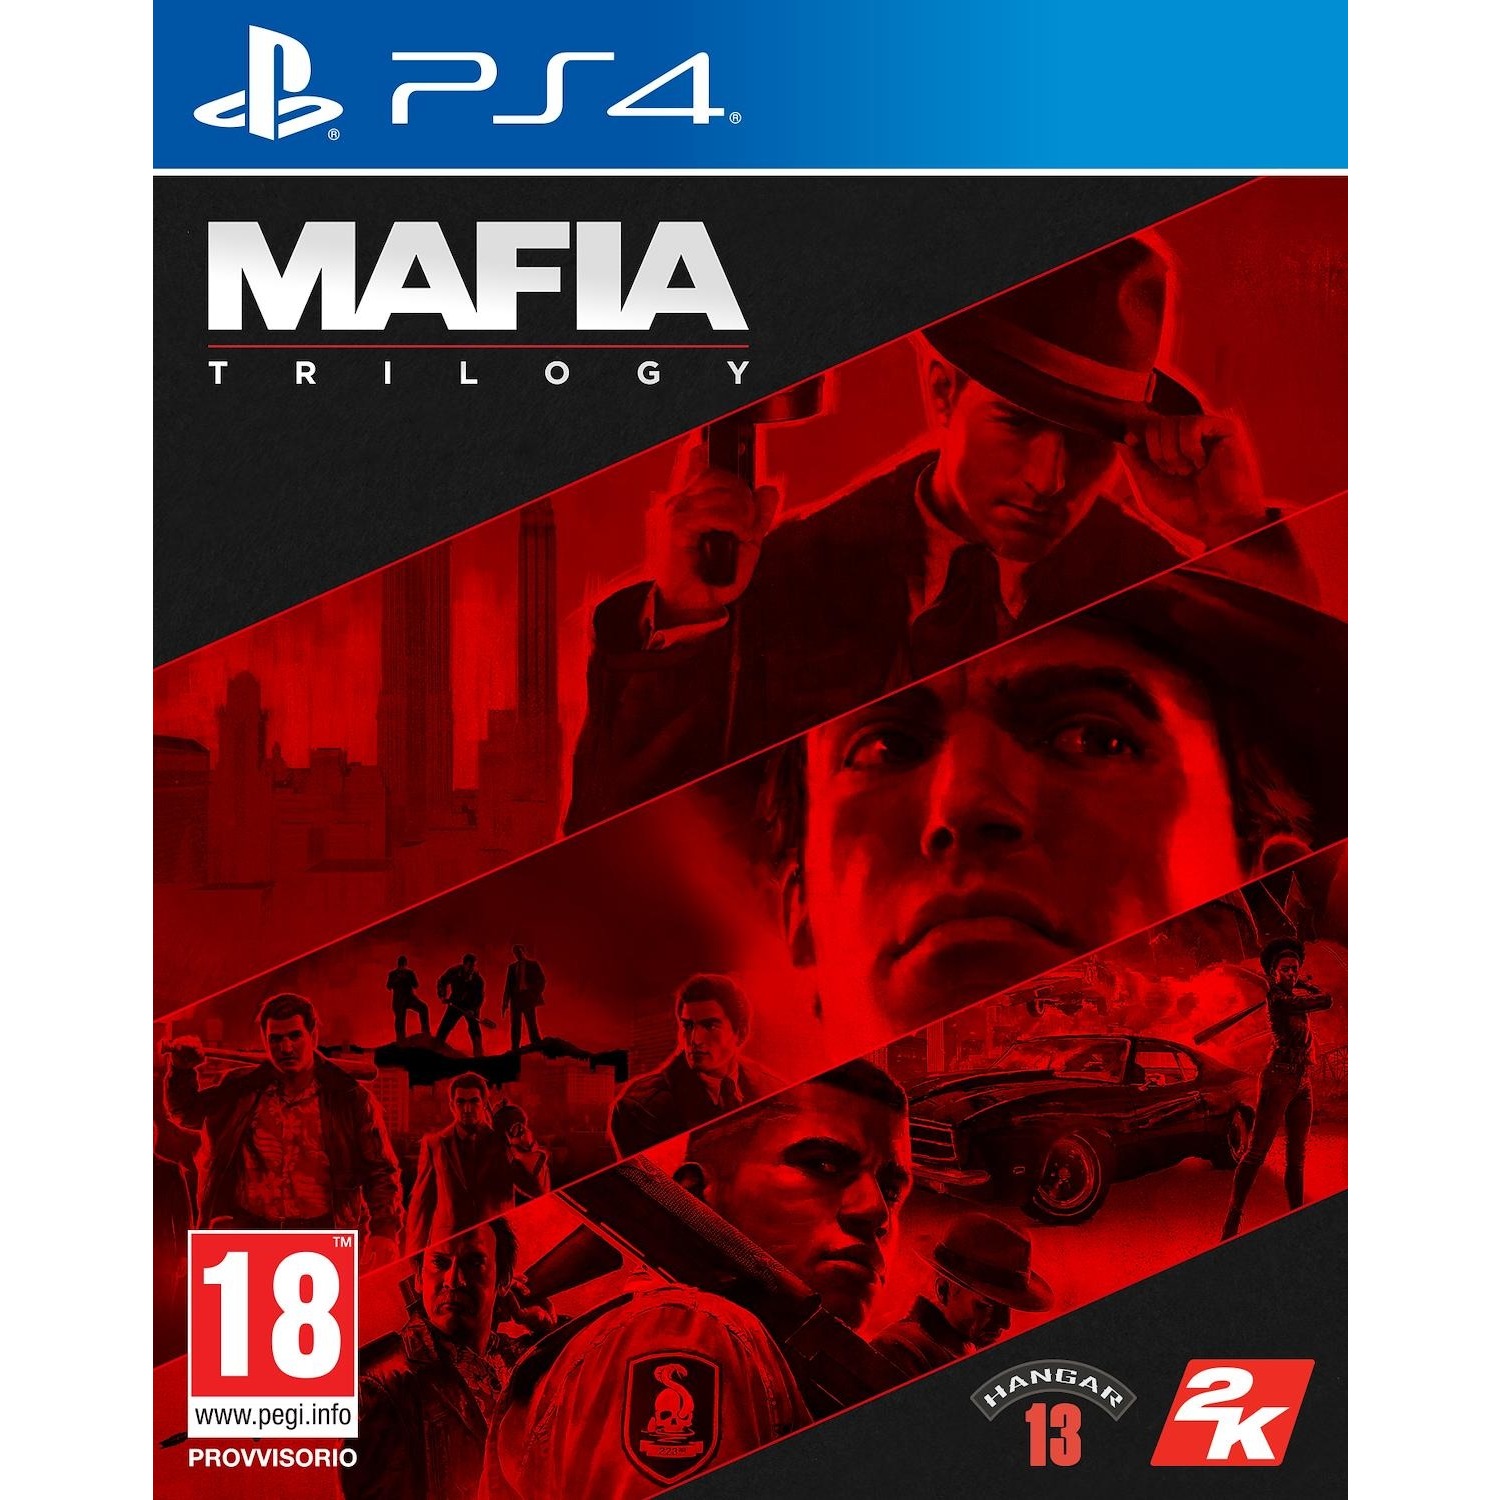 Immagine per Gioco PS4 Mafia Trilogy da DIMOStore